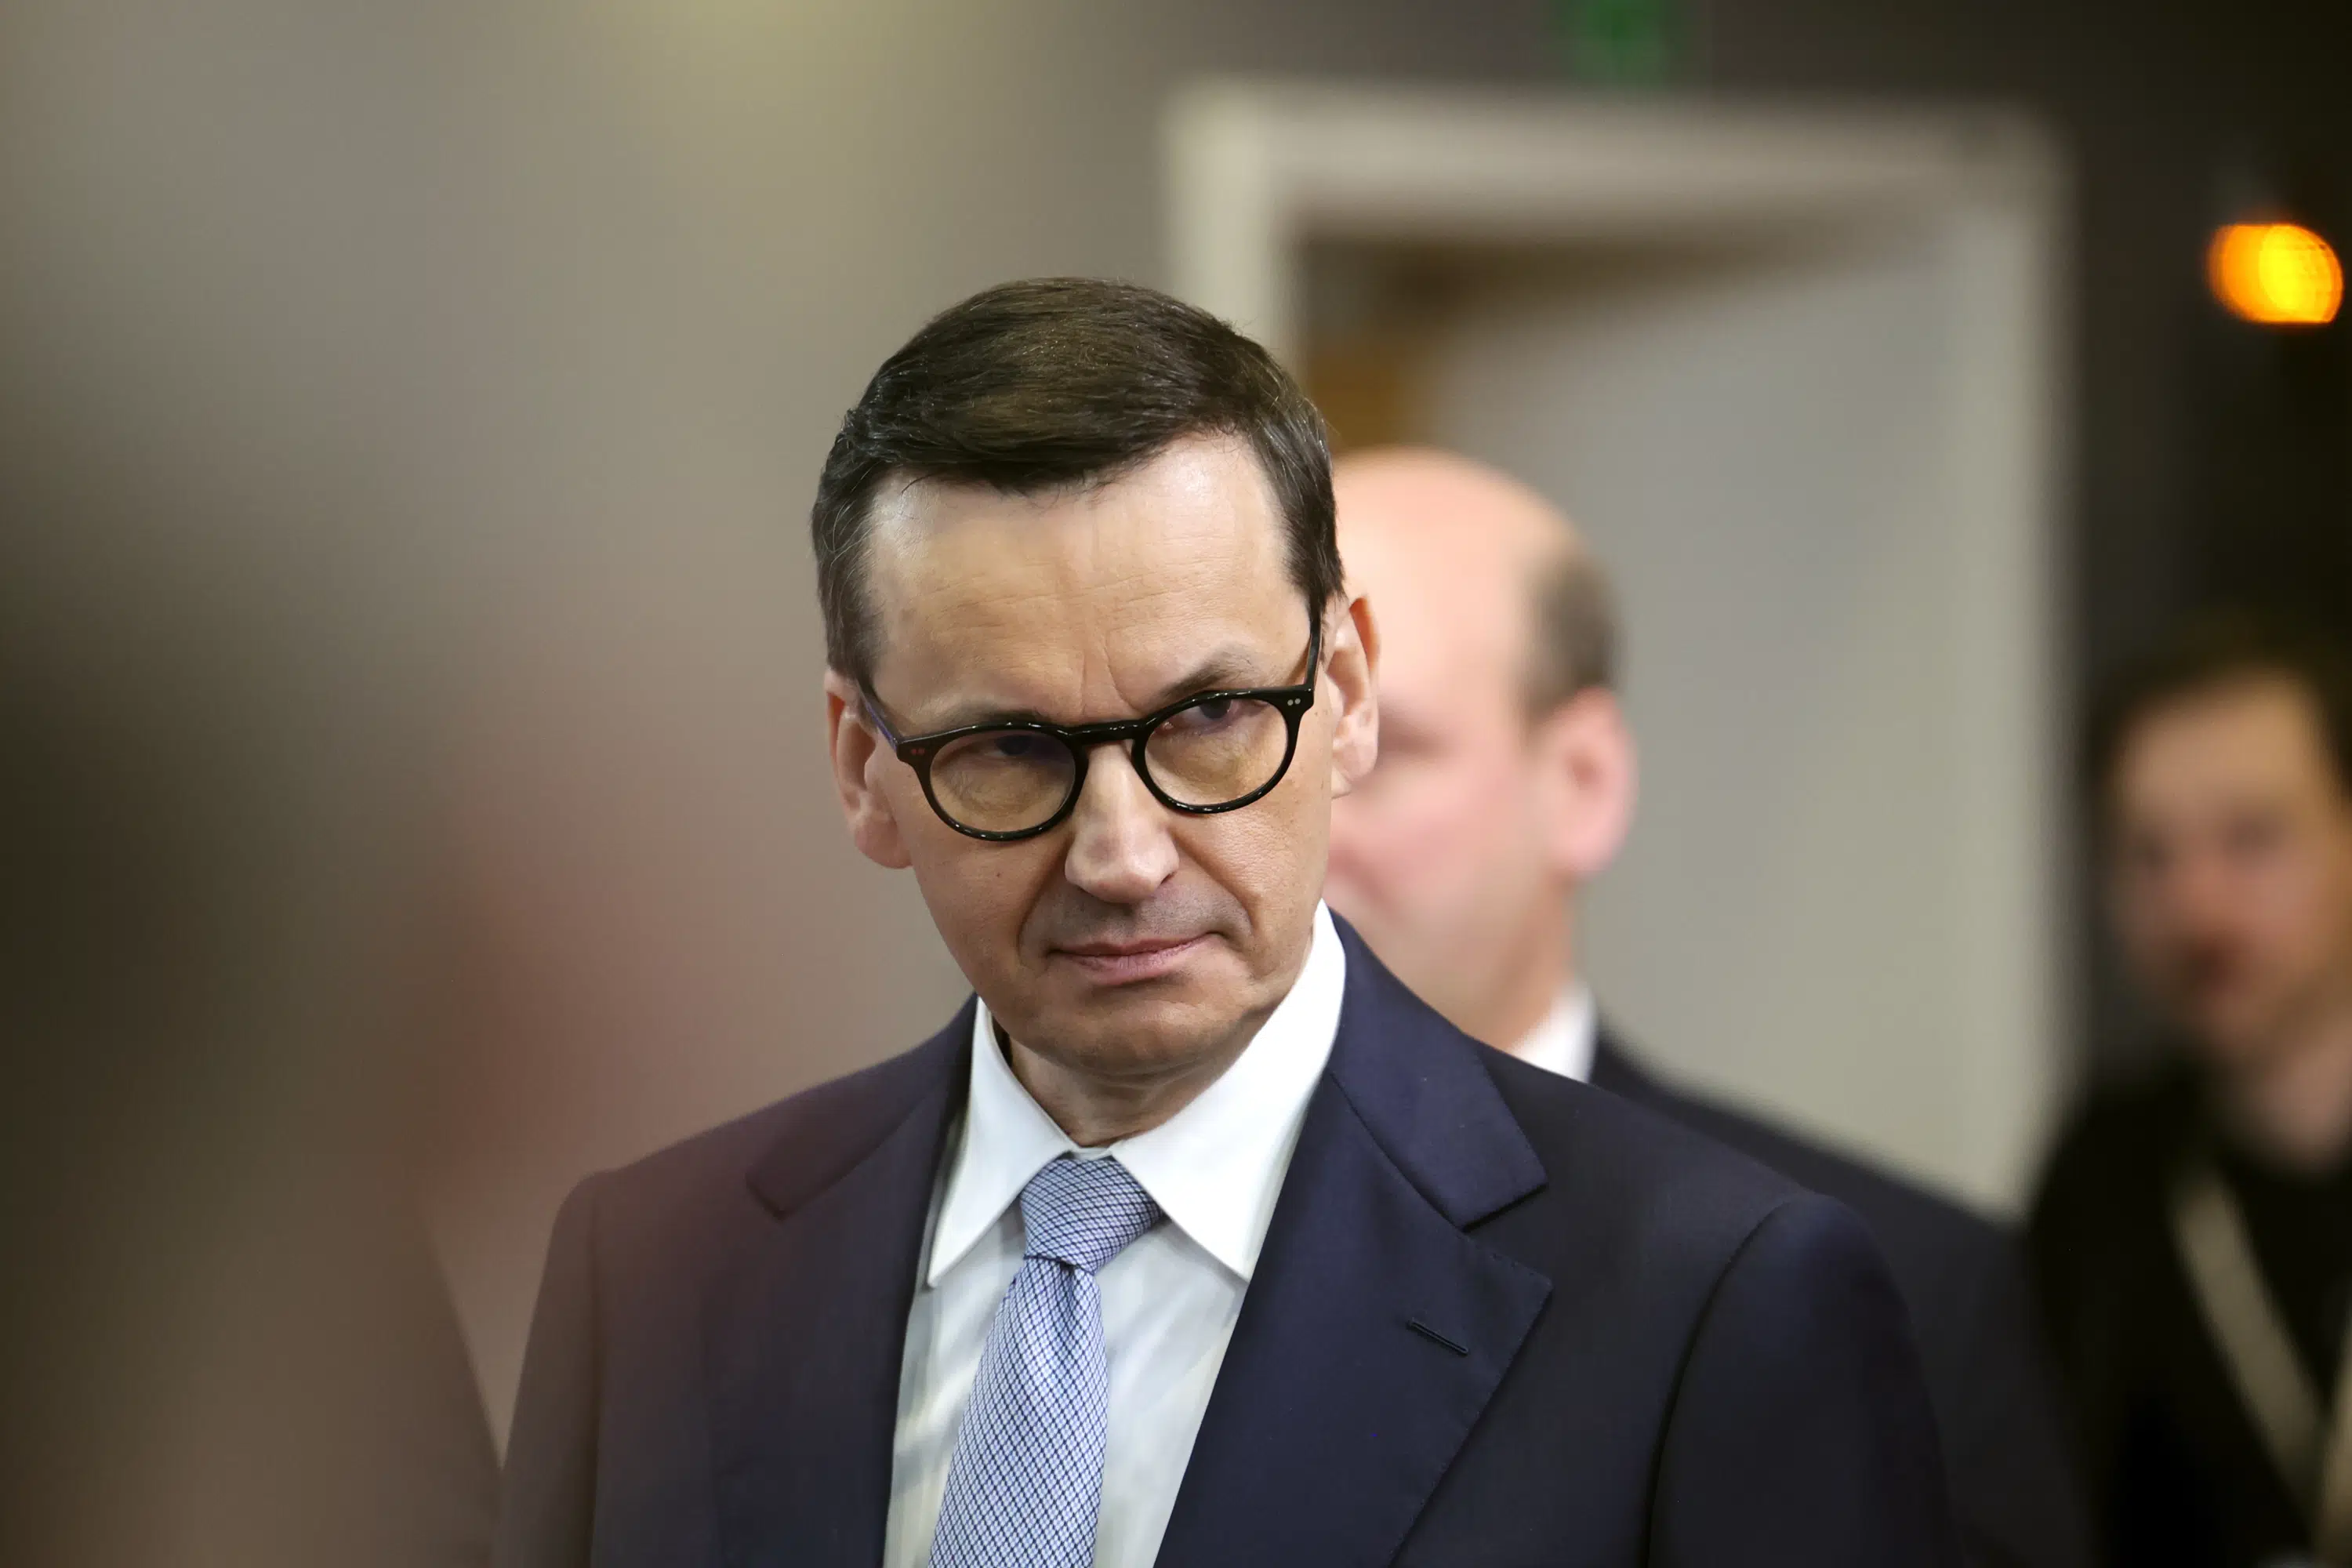 Polski przywódca odwiedza USA w celu dalszego wzmocnienia więzi bezpieczeństwa